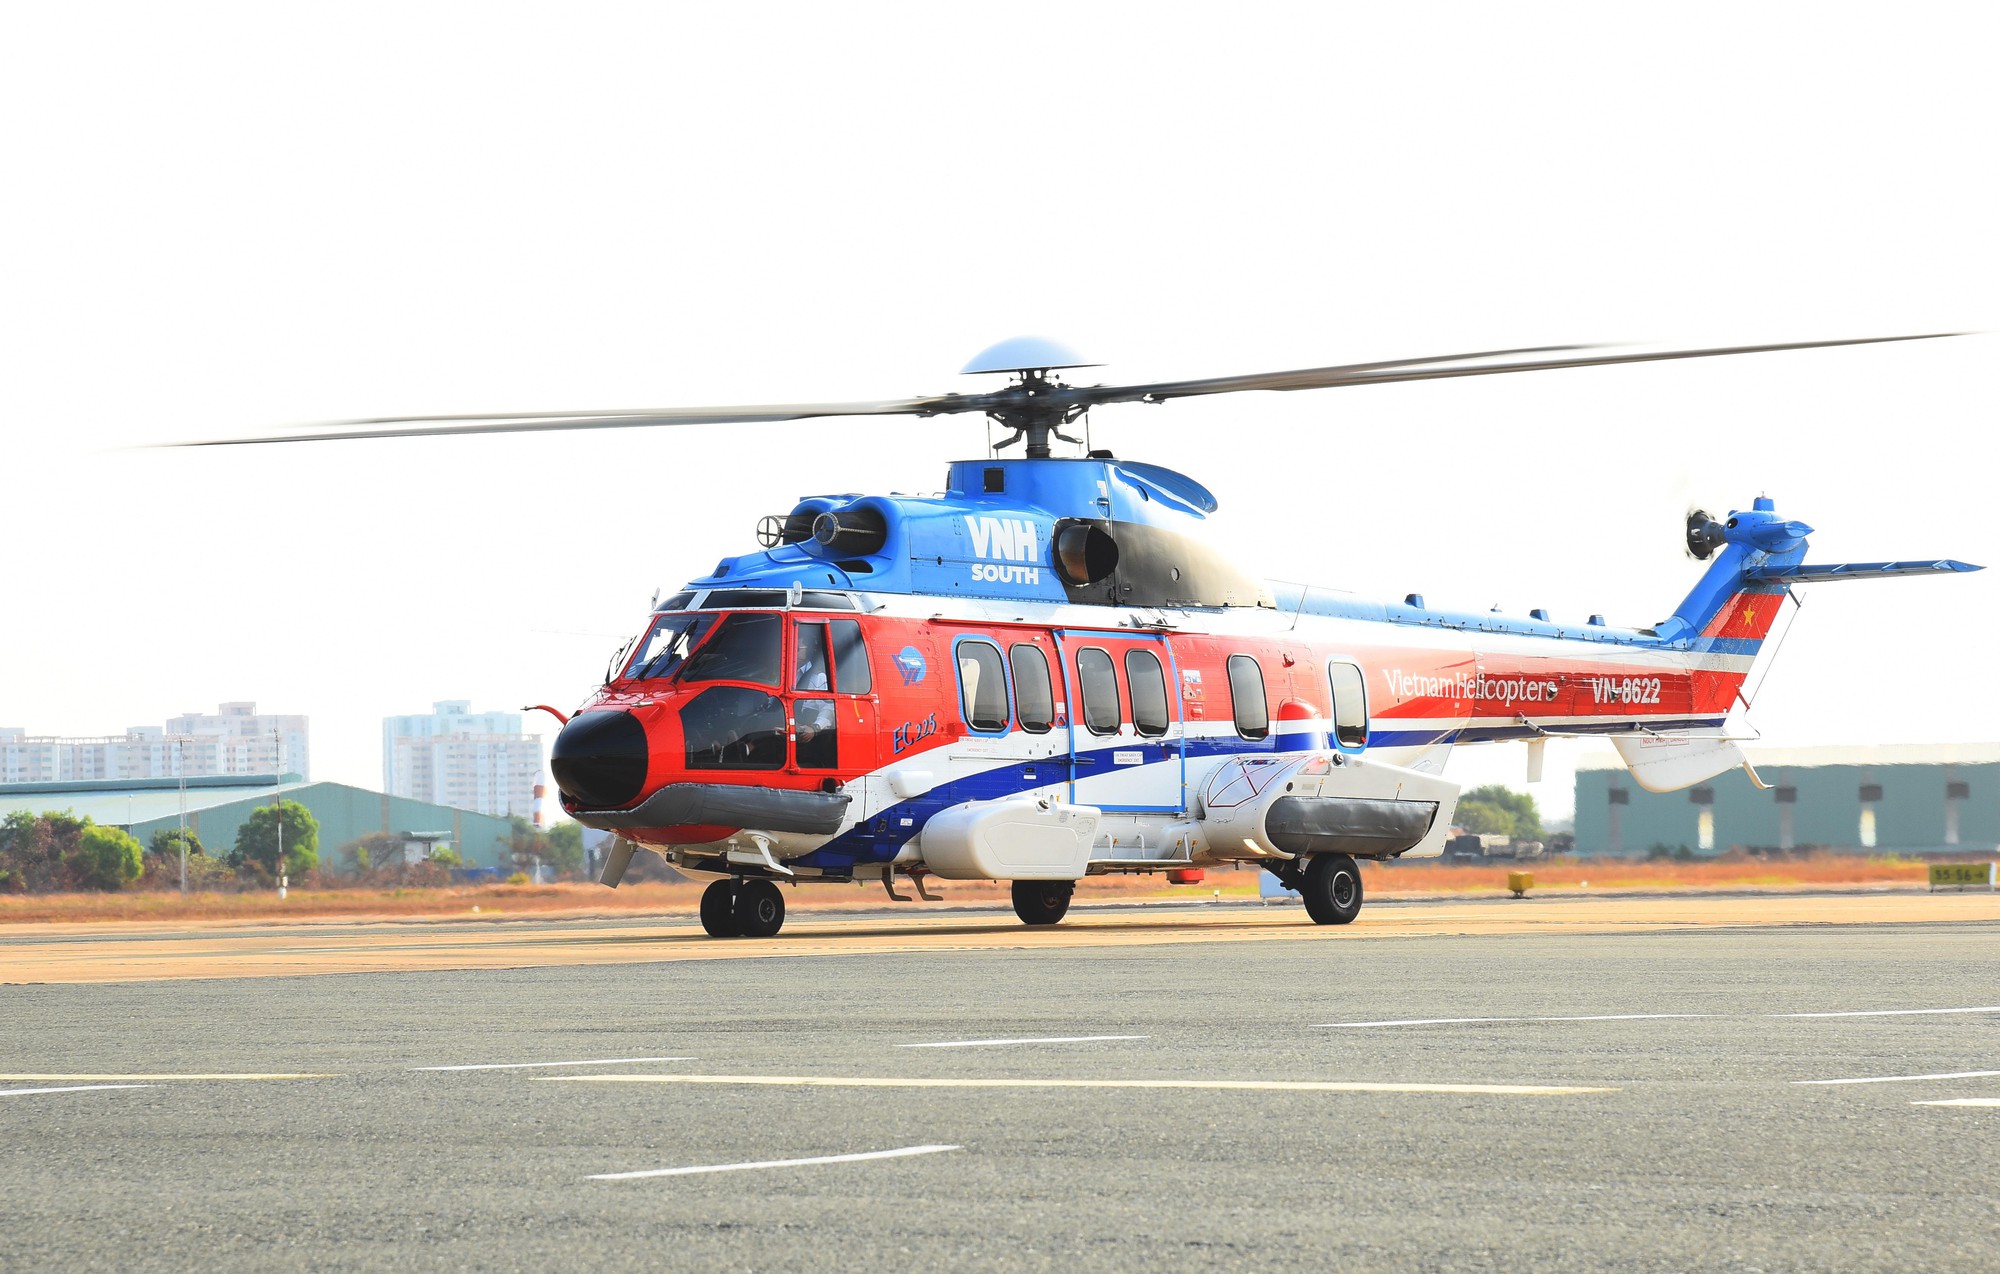 Thực hư tour du lịch bằng trực thăng, giá 12.000 USD đến Vườn Quốc gia Cát Tiên - Ảnh 3.